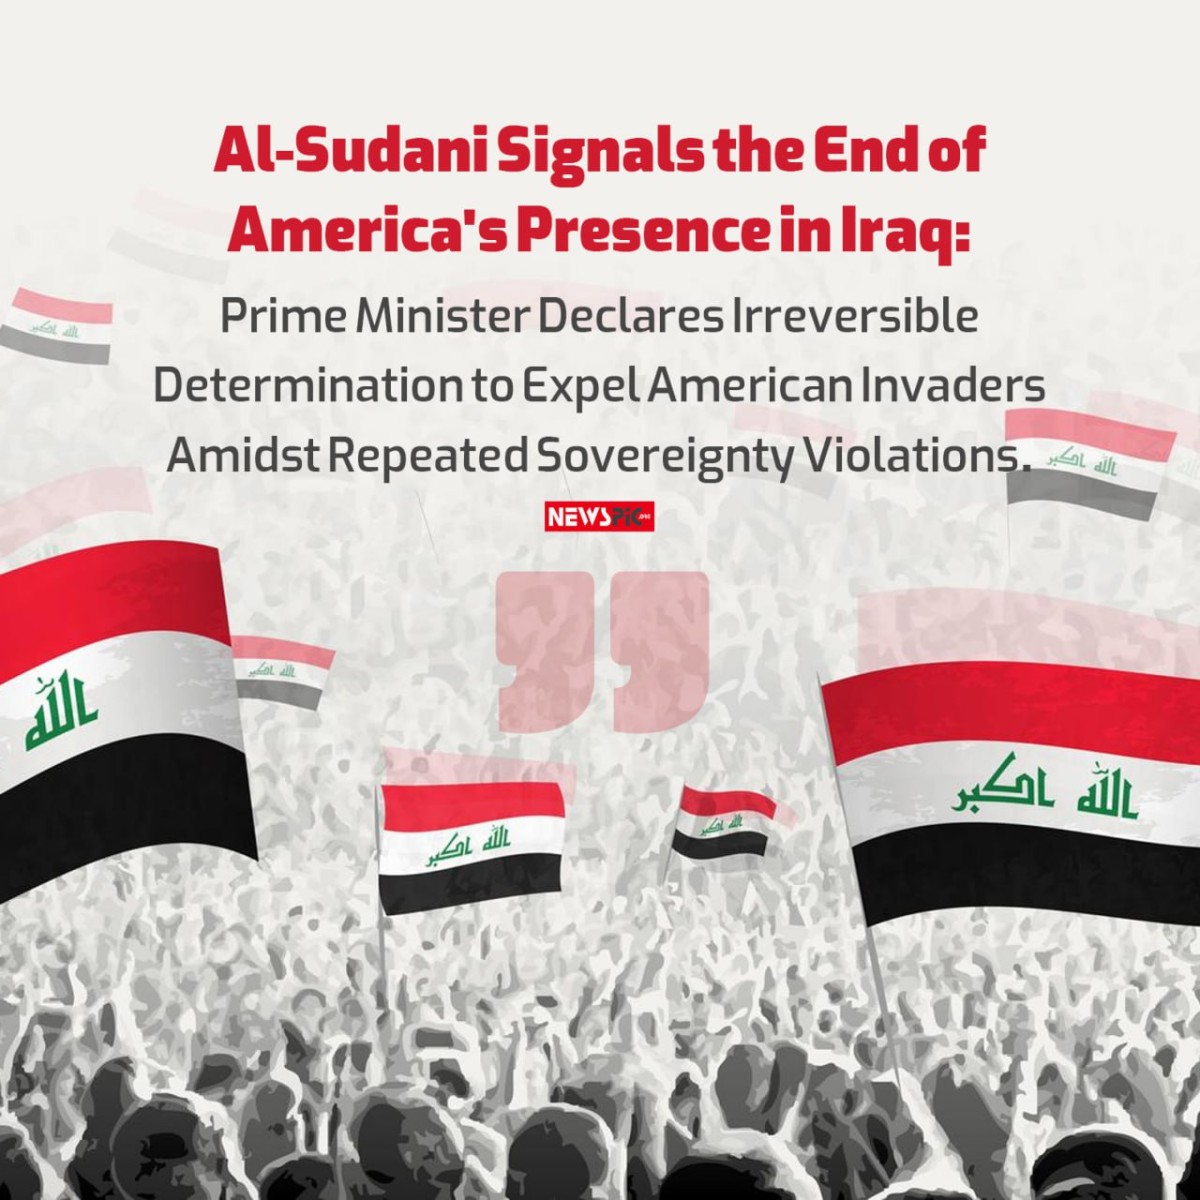 Al-Sudani Signals the End of America's Presence in Iraq